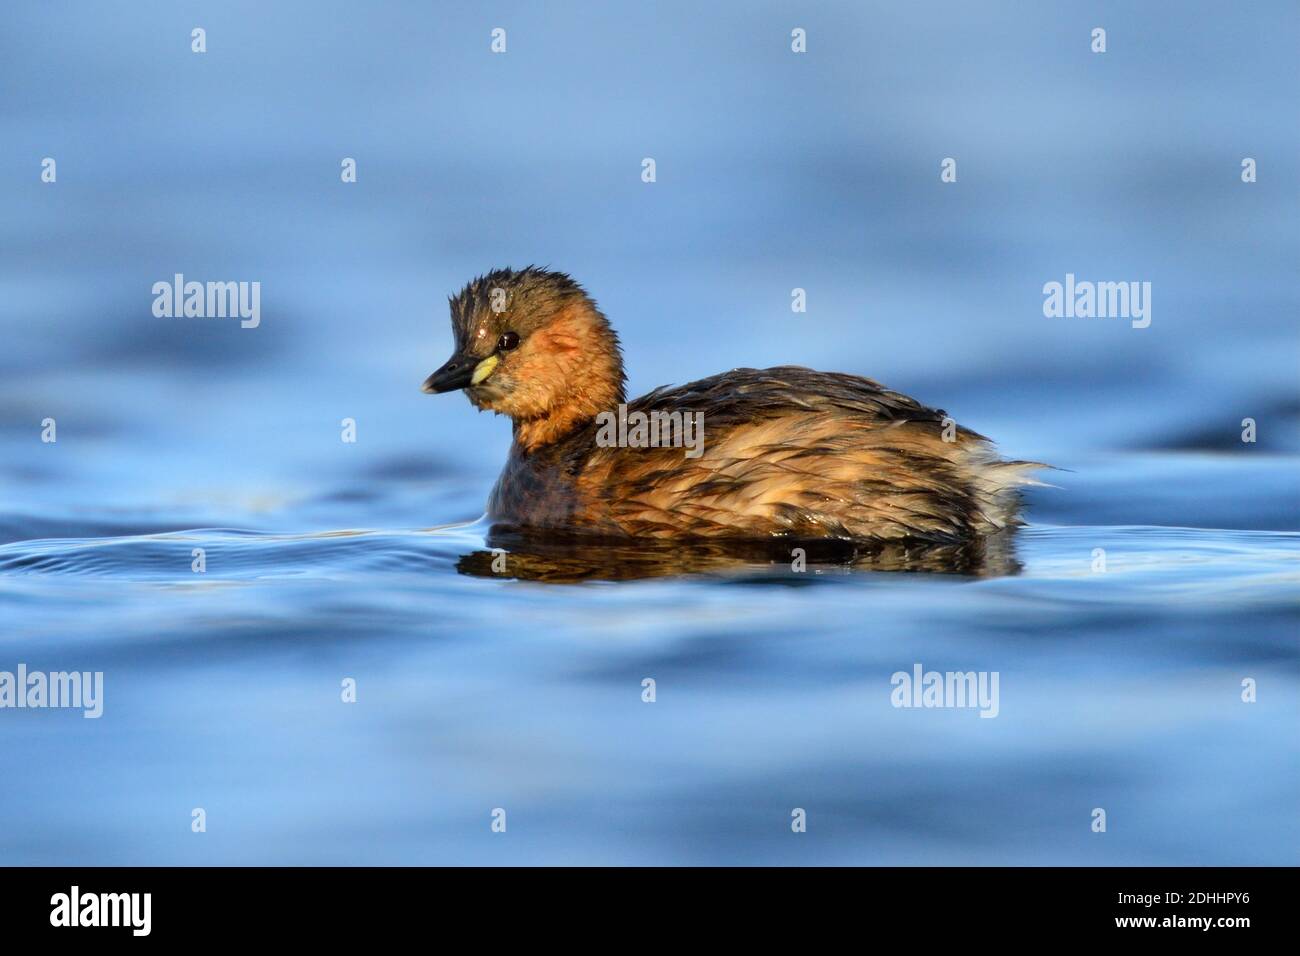 Zwergtaucher schwimmt im Wasser, (Tachybaptus ruficollis) Stock Photo